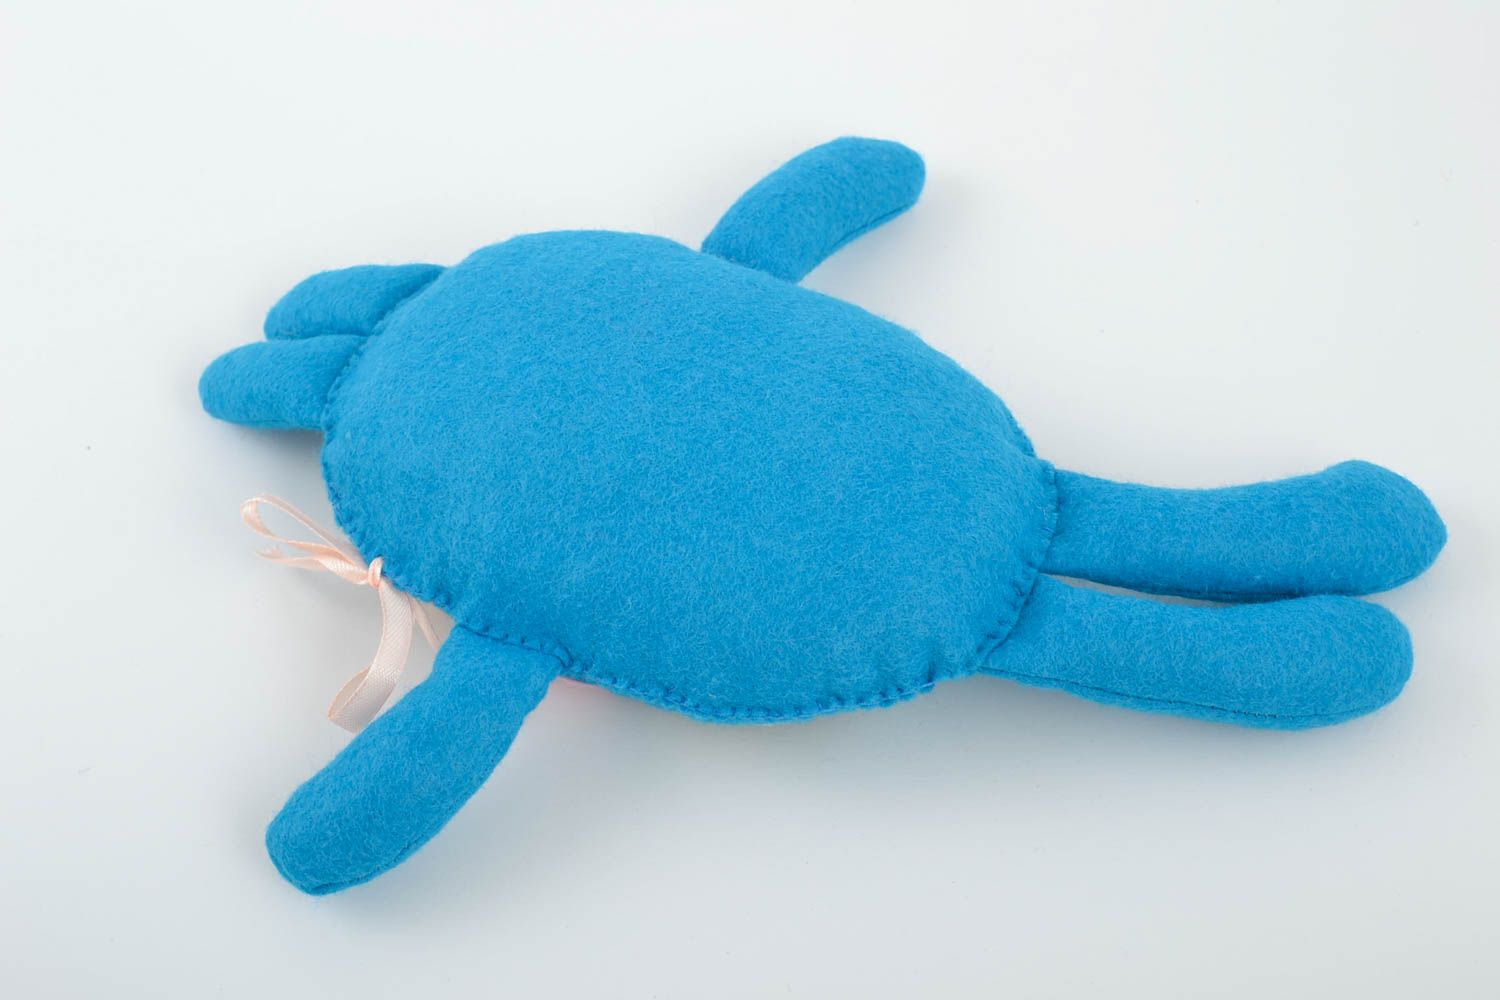 Künstlerisches Filz Kuscheltier Hase in Blau von Handarbeit schön klein süß foto 4